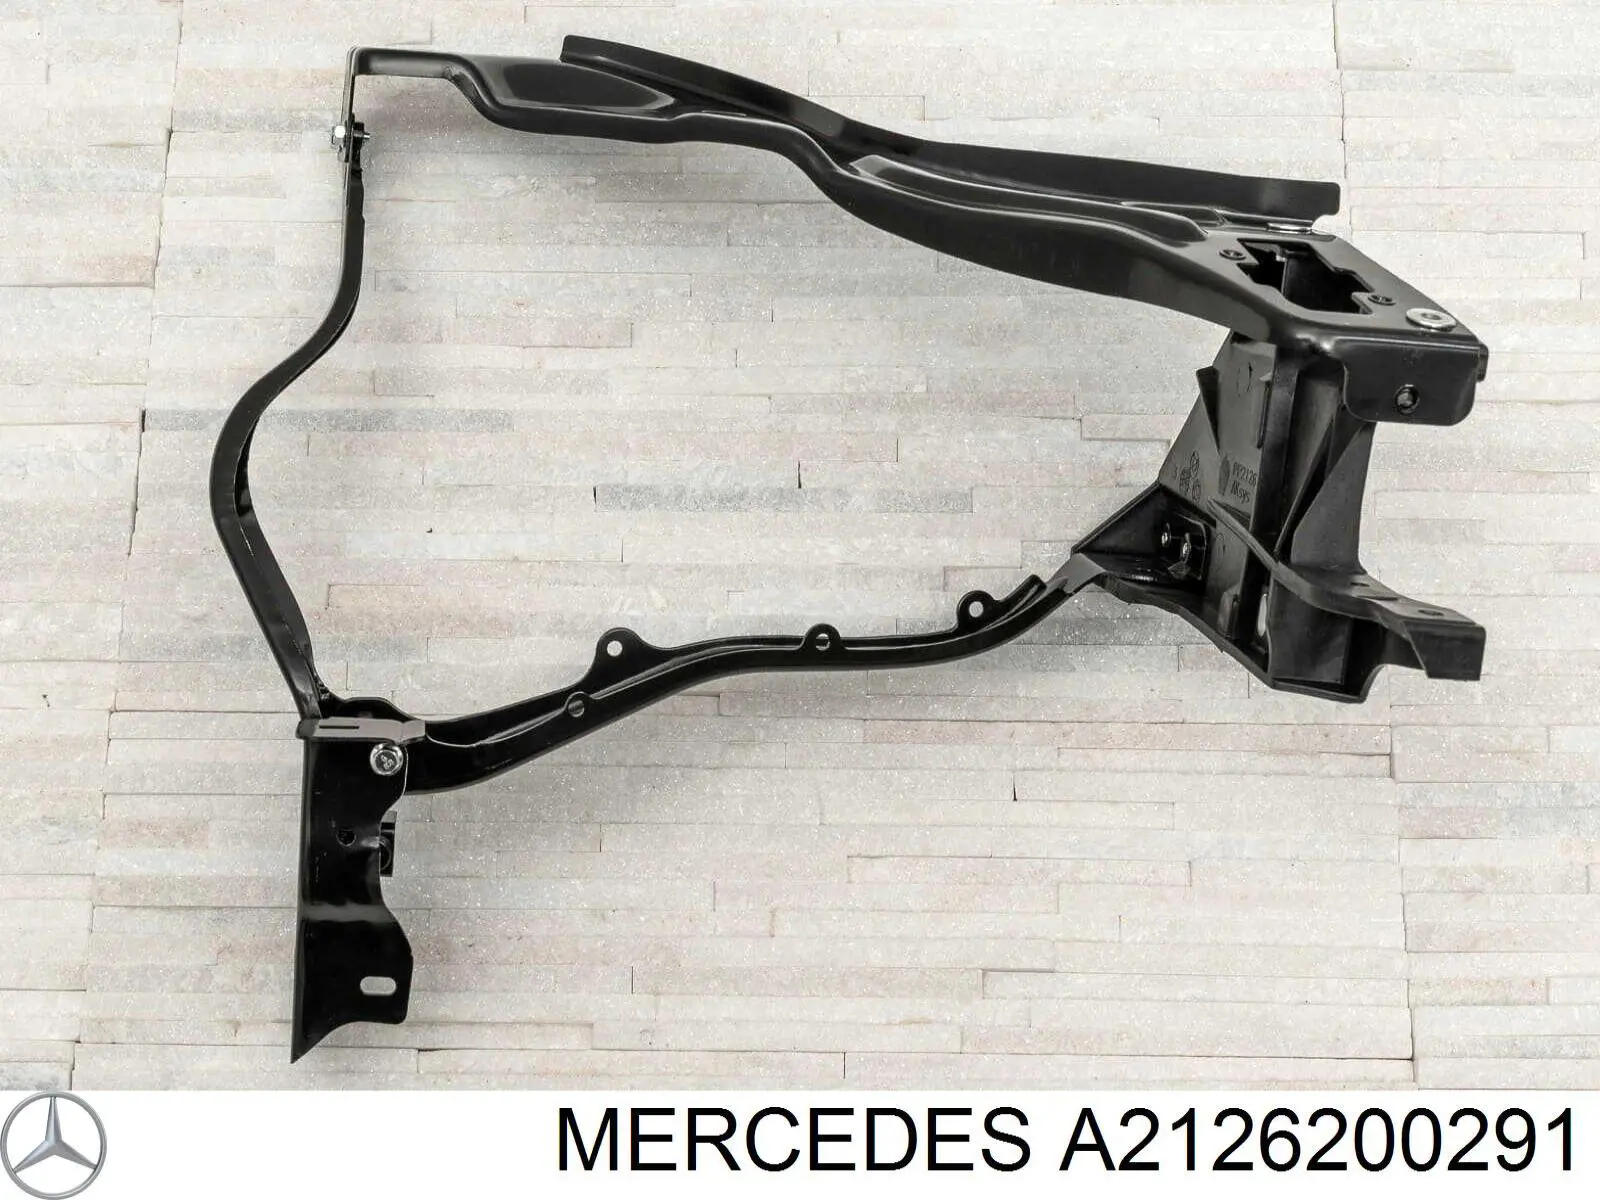 A2126200291 Mercedes суппорт радиатора правый (монтажная панель крепления фар)